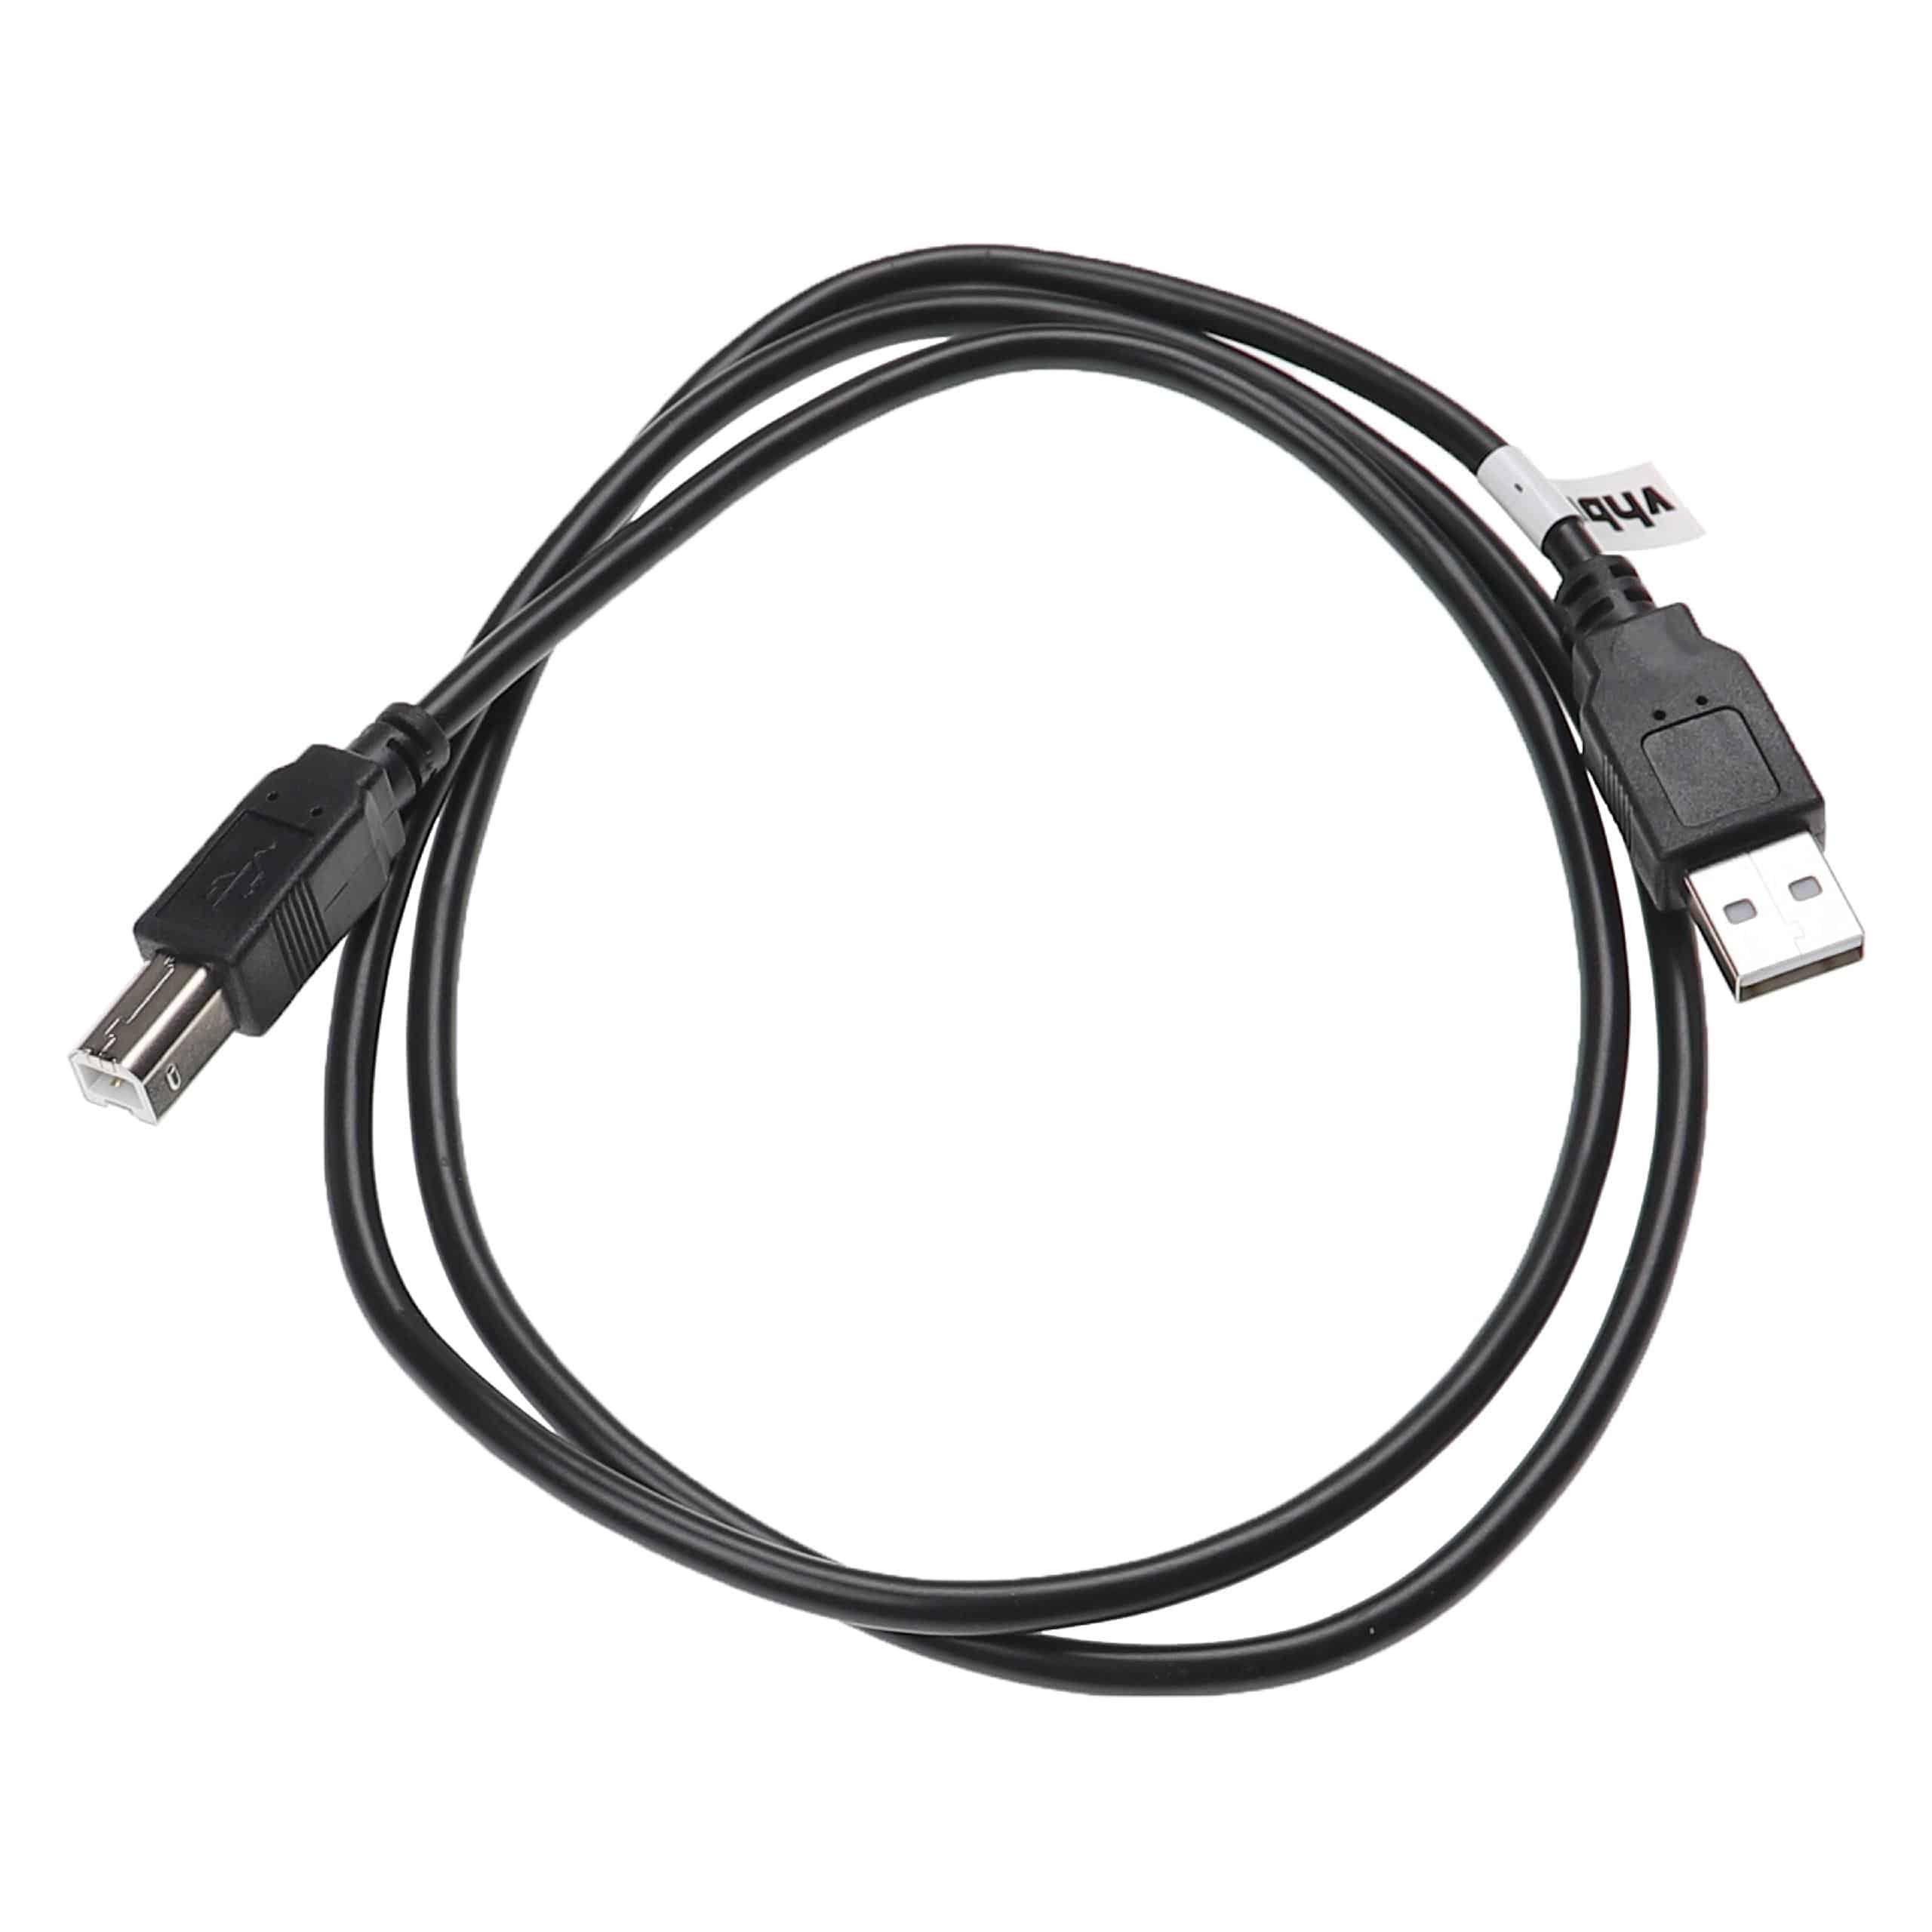 Cable adaptador USB A a USB B para impresora, escáner y fax - Cable de conexión